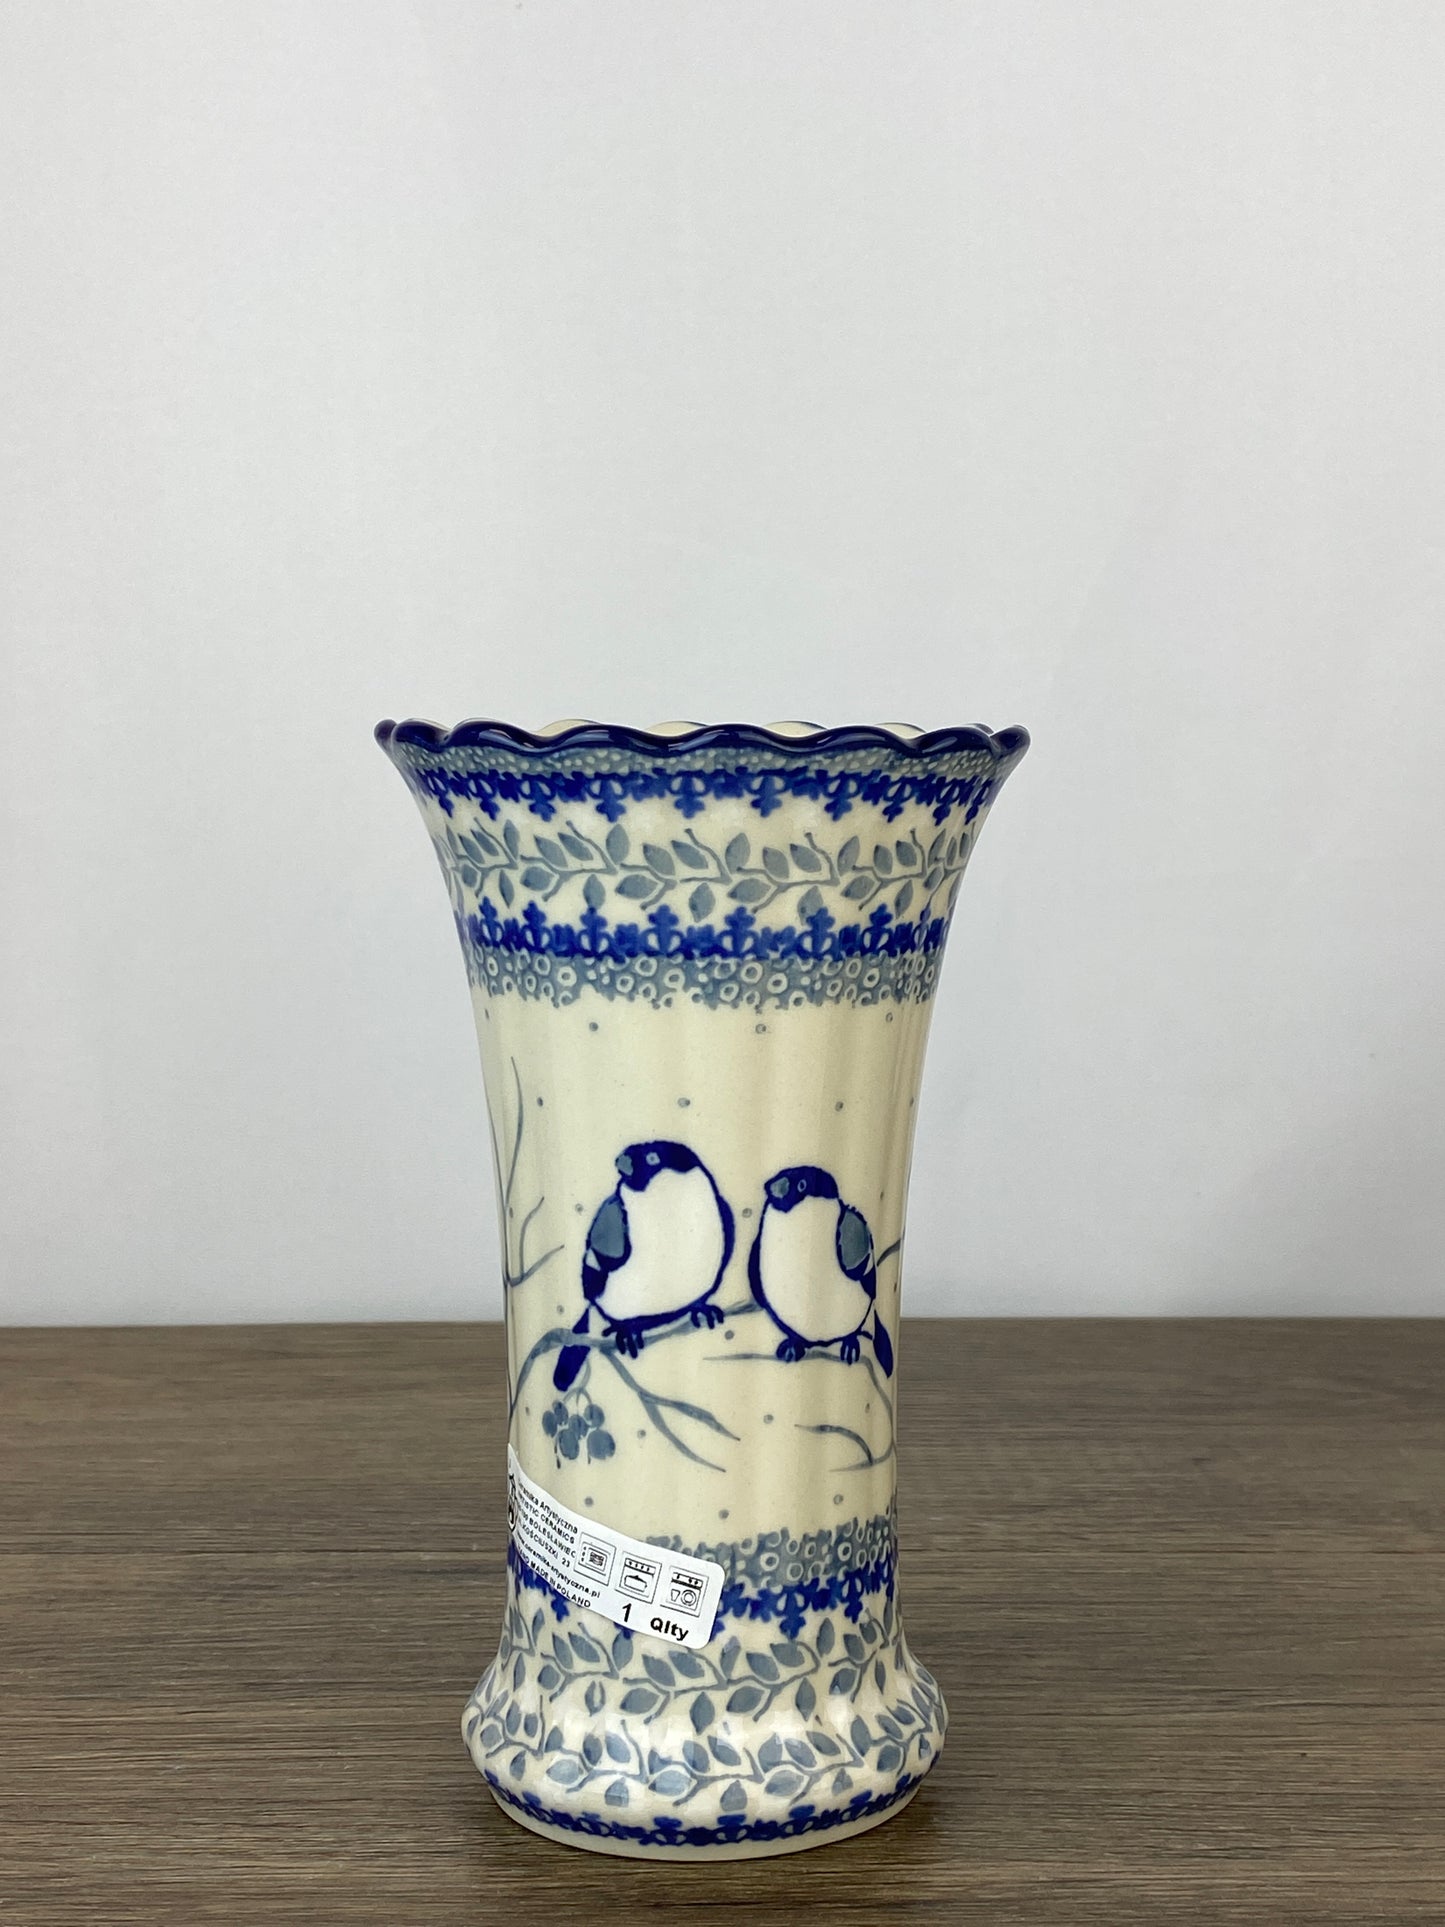 Ruffled Unikat Vase - Shape 50 - Pattern U4830